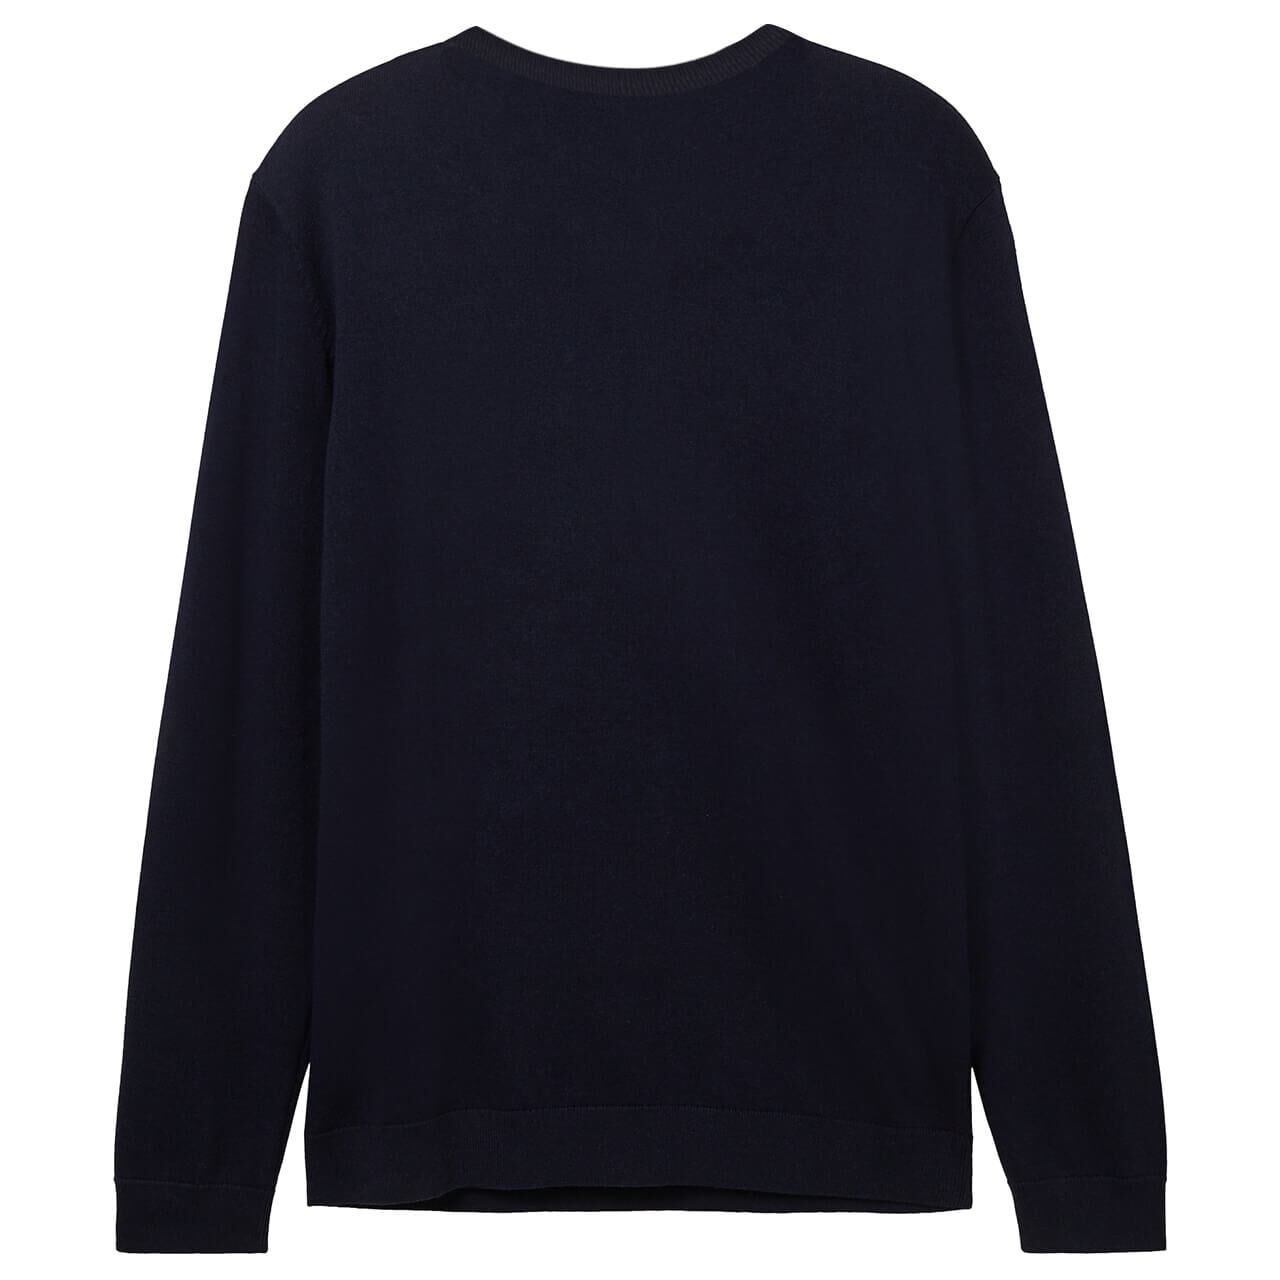 Tom Tailor Herren Pullover Basic V-neck knitted navy melange compact cotton